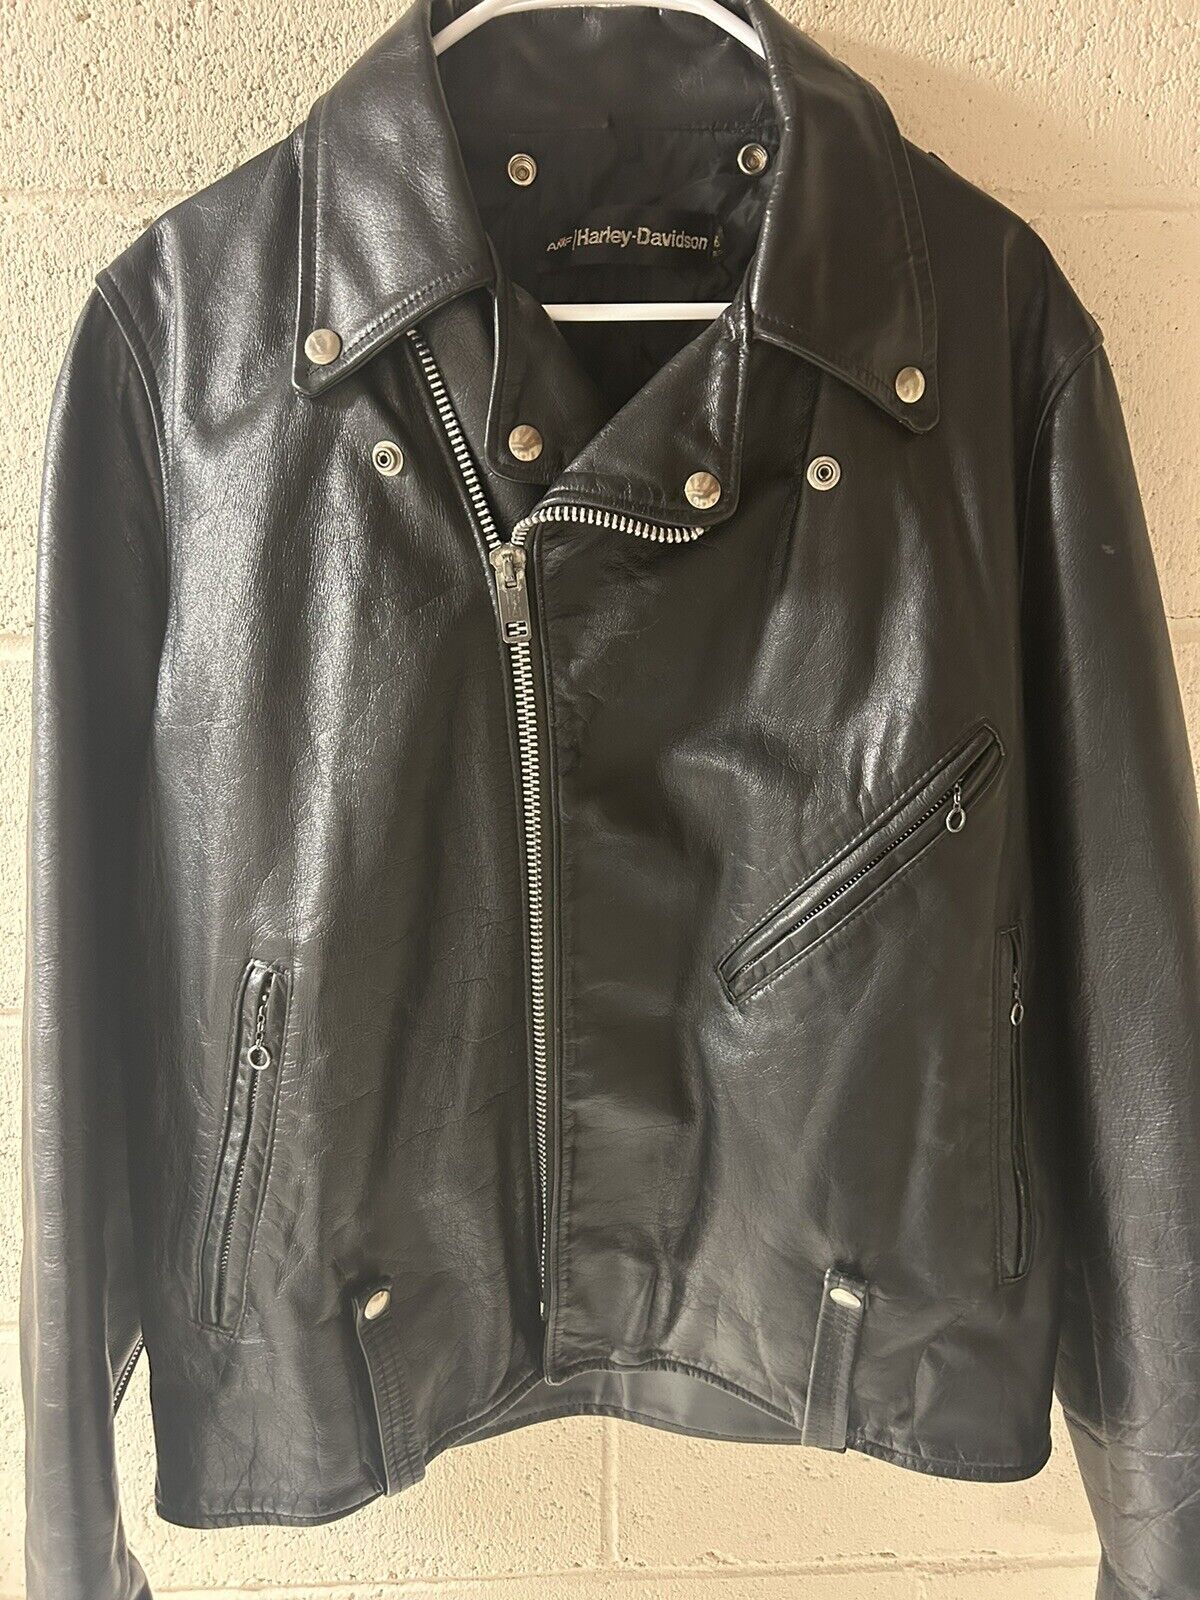 Men’s Vintage 1970’s Harley Davidson Leather Motorcycle Jacket Black Size 46 Reg